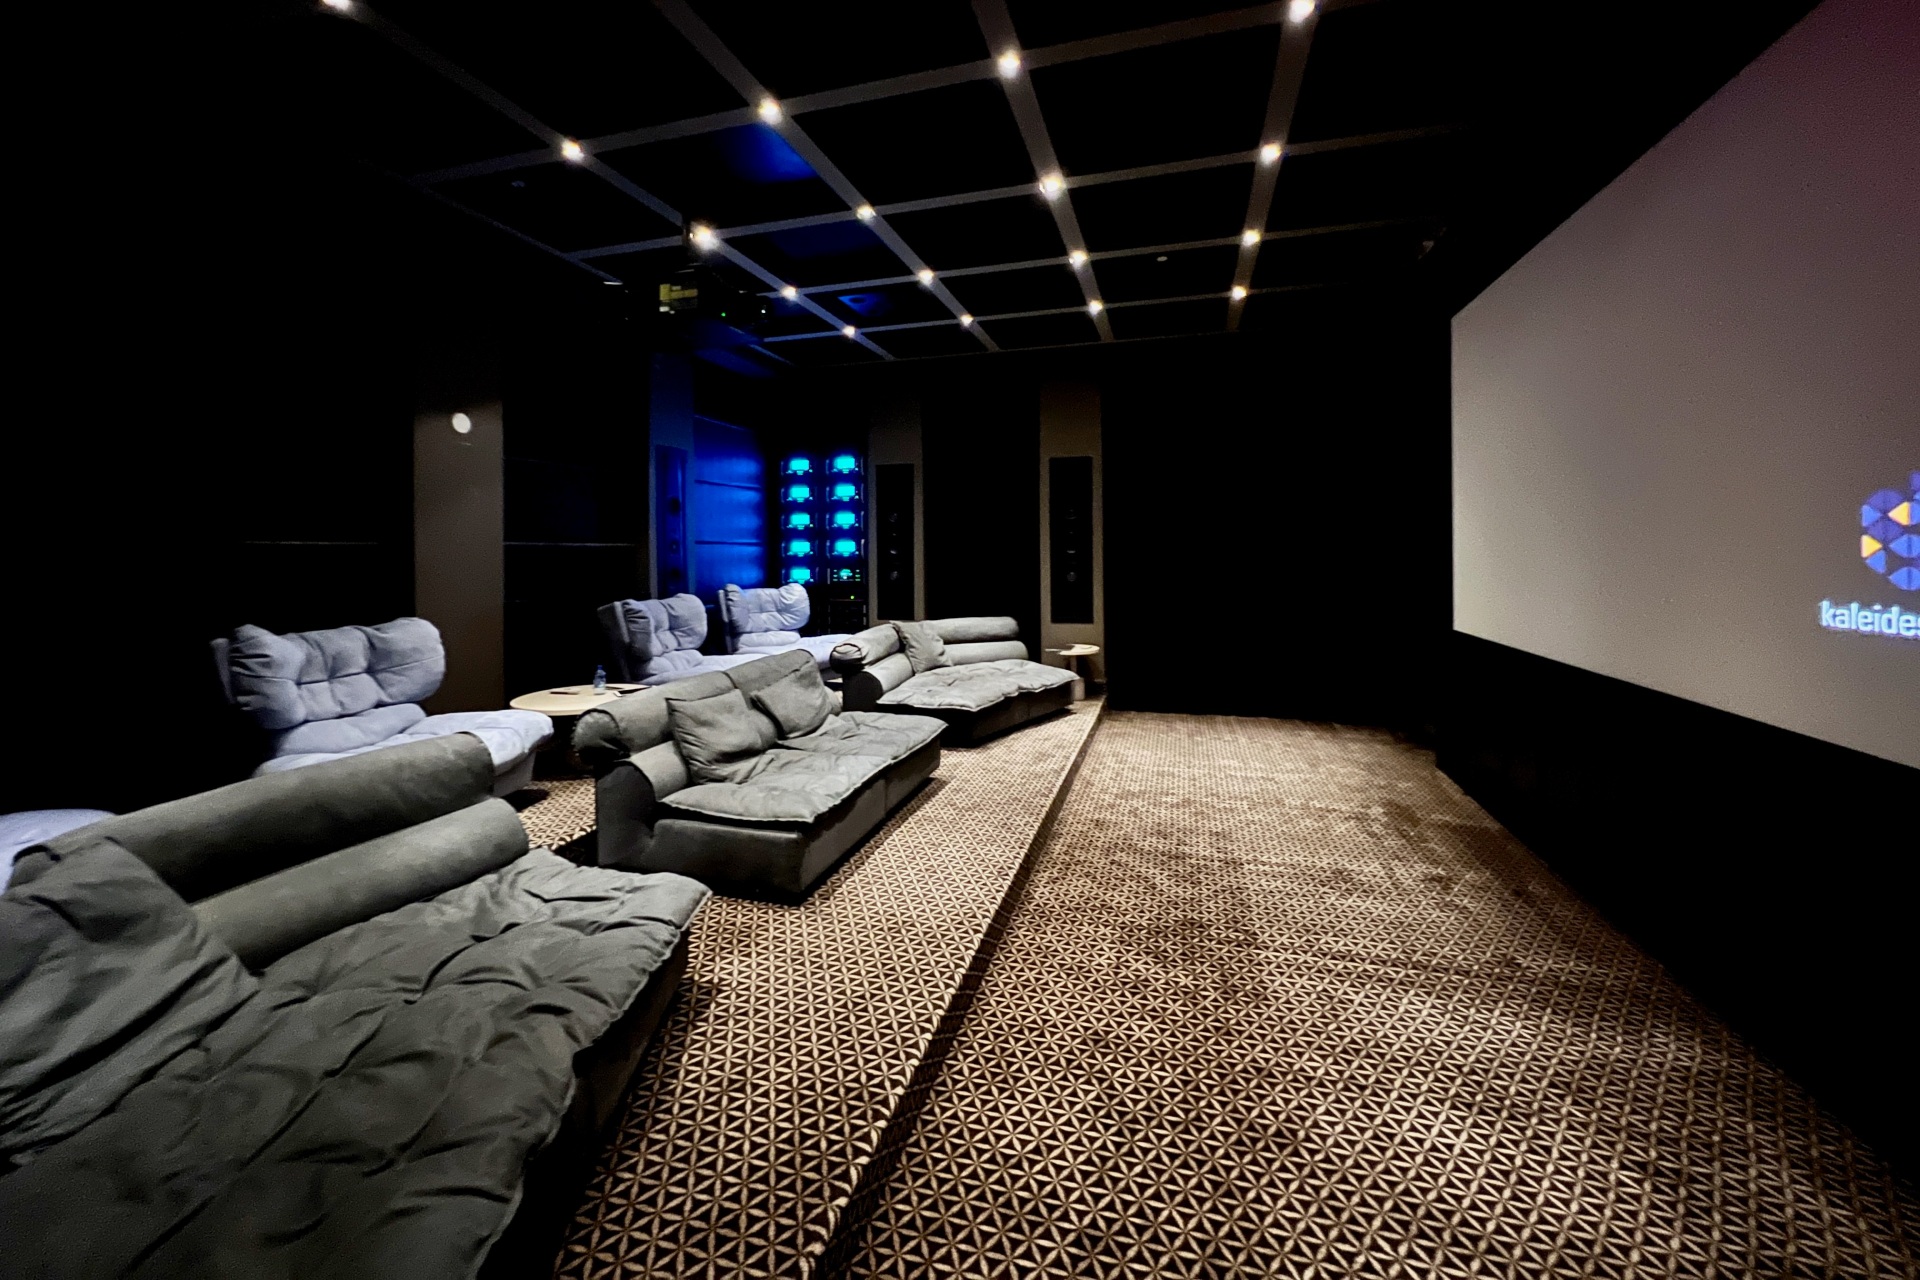 El espacio de cine en casa de la casa adosada House of Sound de The McIntosh Group.